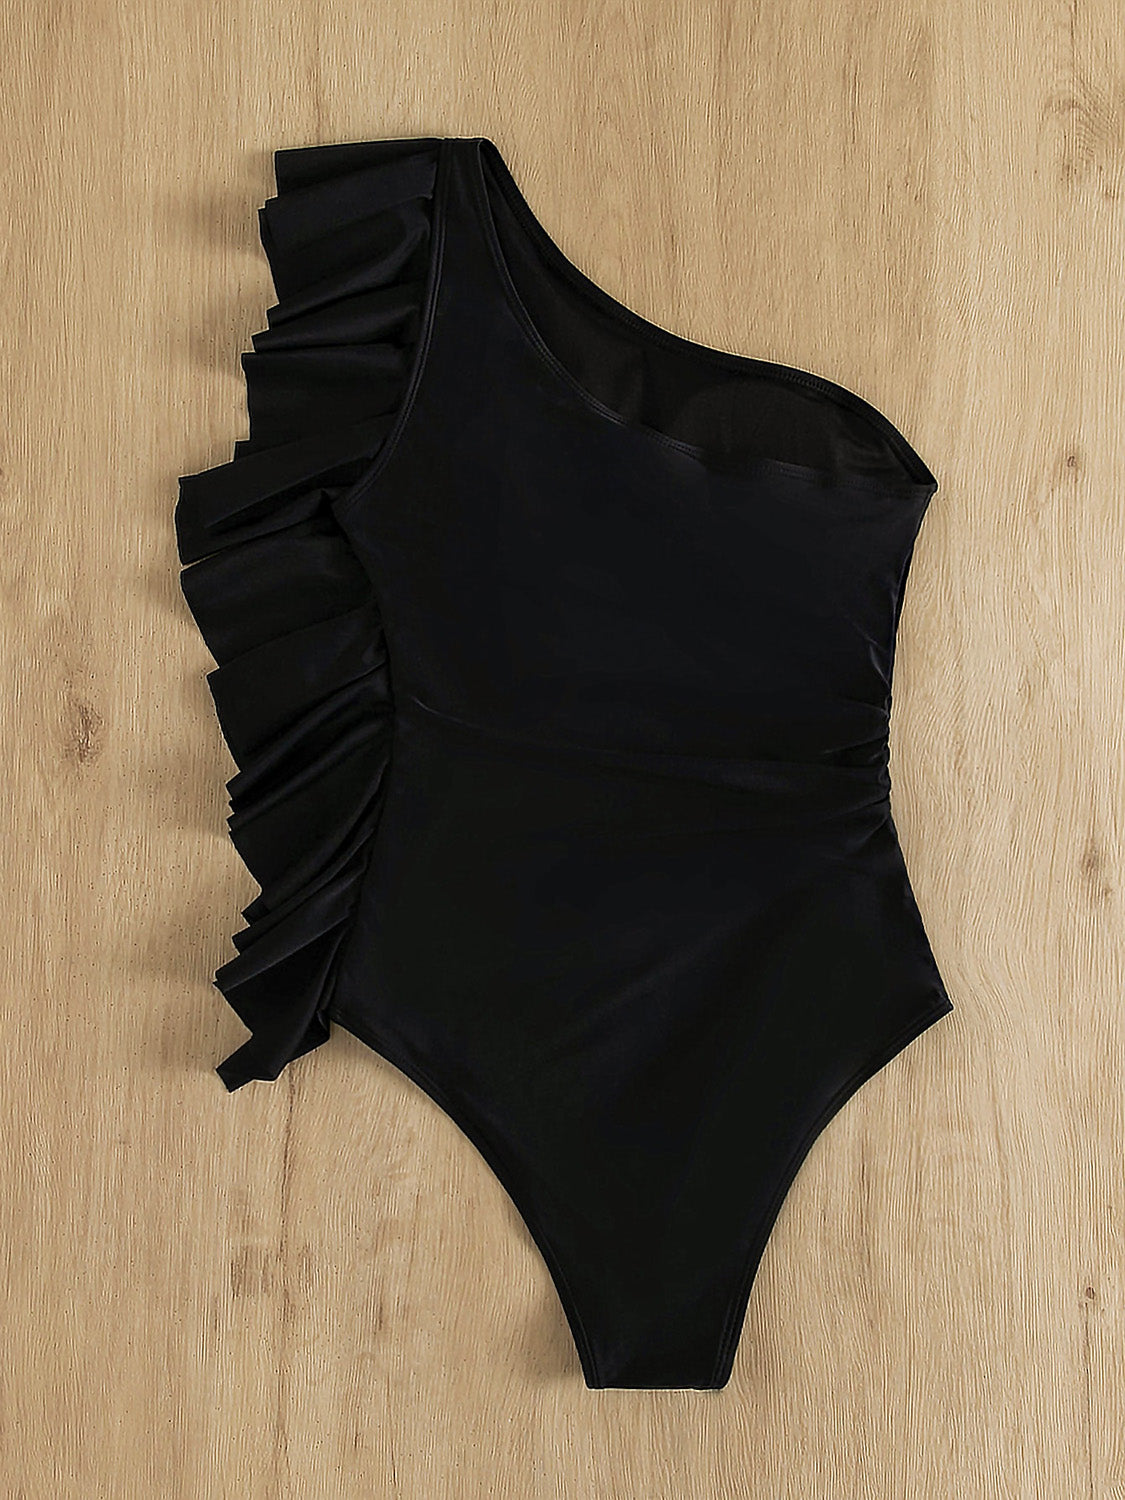 TEEK - Ruffled Single Shoulder One-Piece Swimwear SWIMWEAR TEEK Trend   